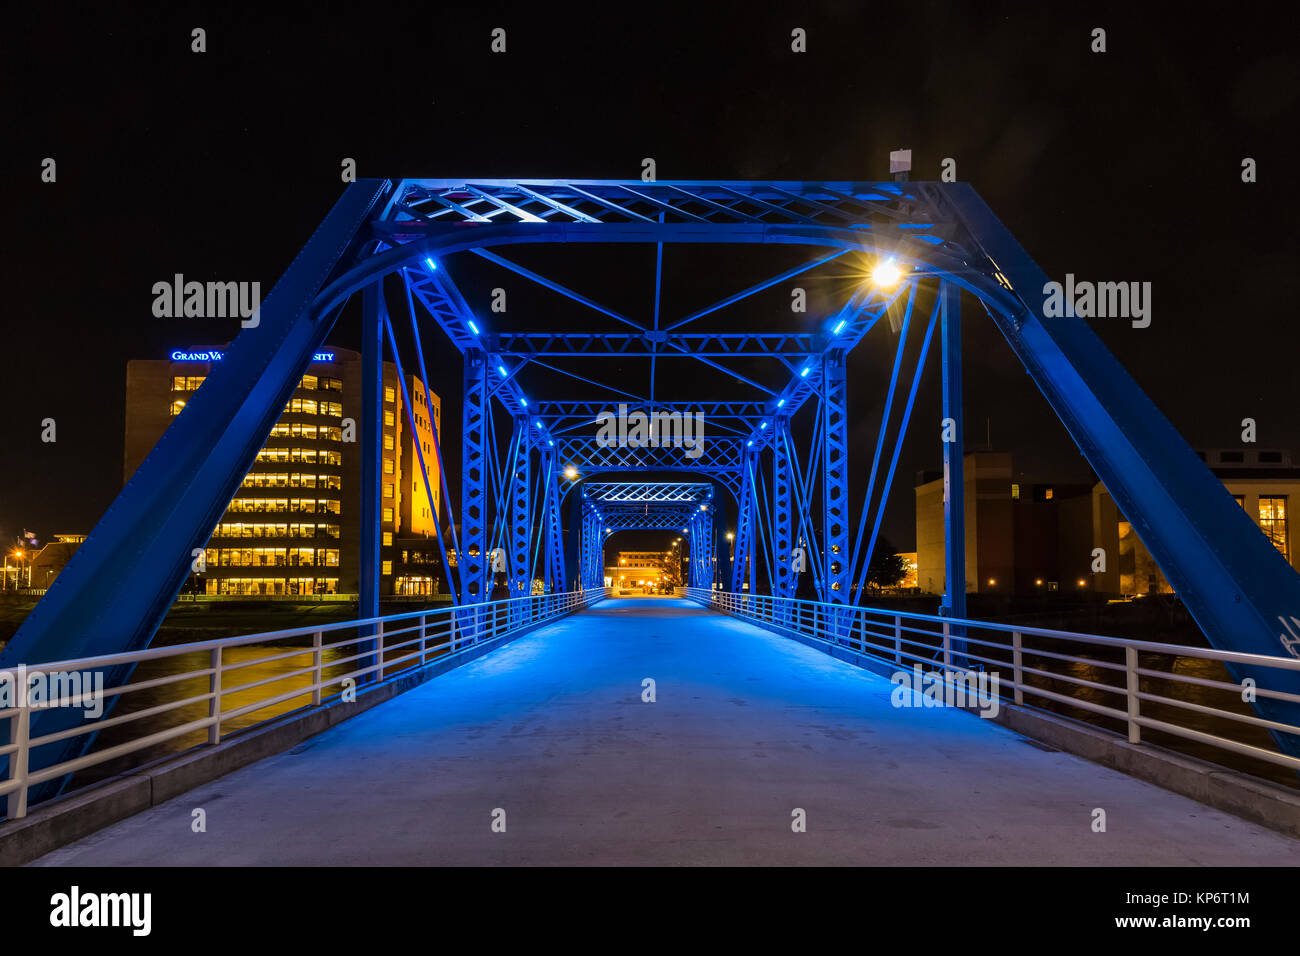 Night on the Blue Bridge over the Grand River in Grand Rapids, Michigan, USA Stock Photo